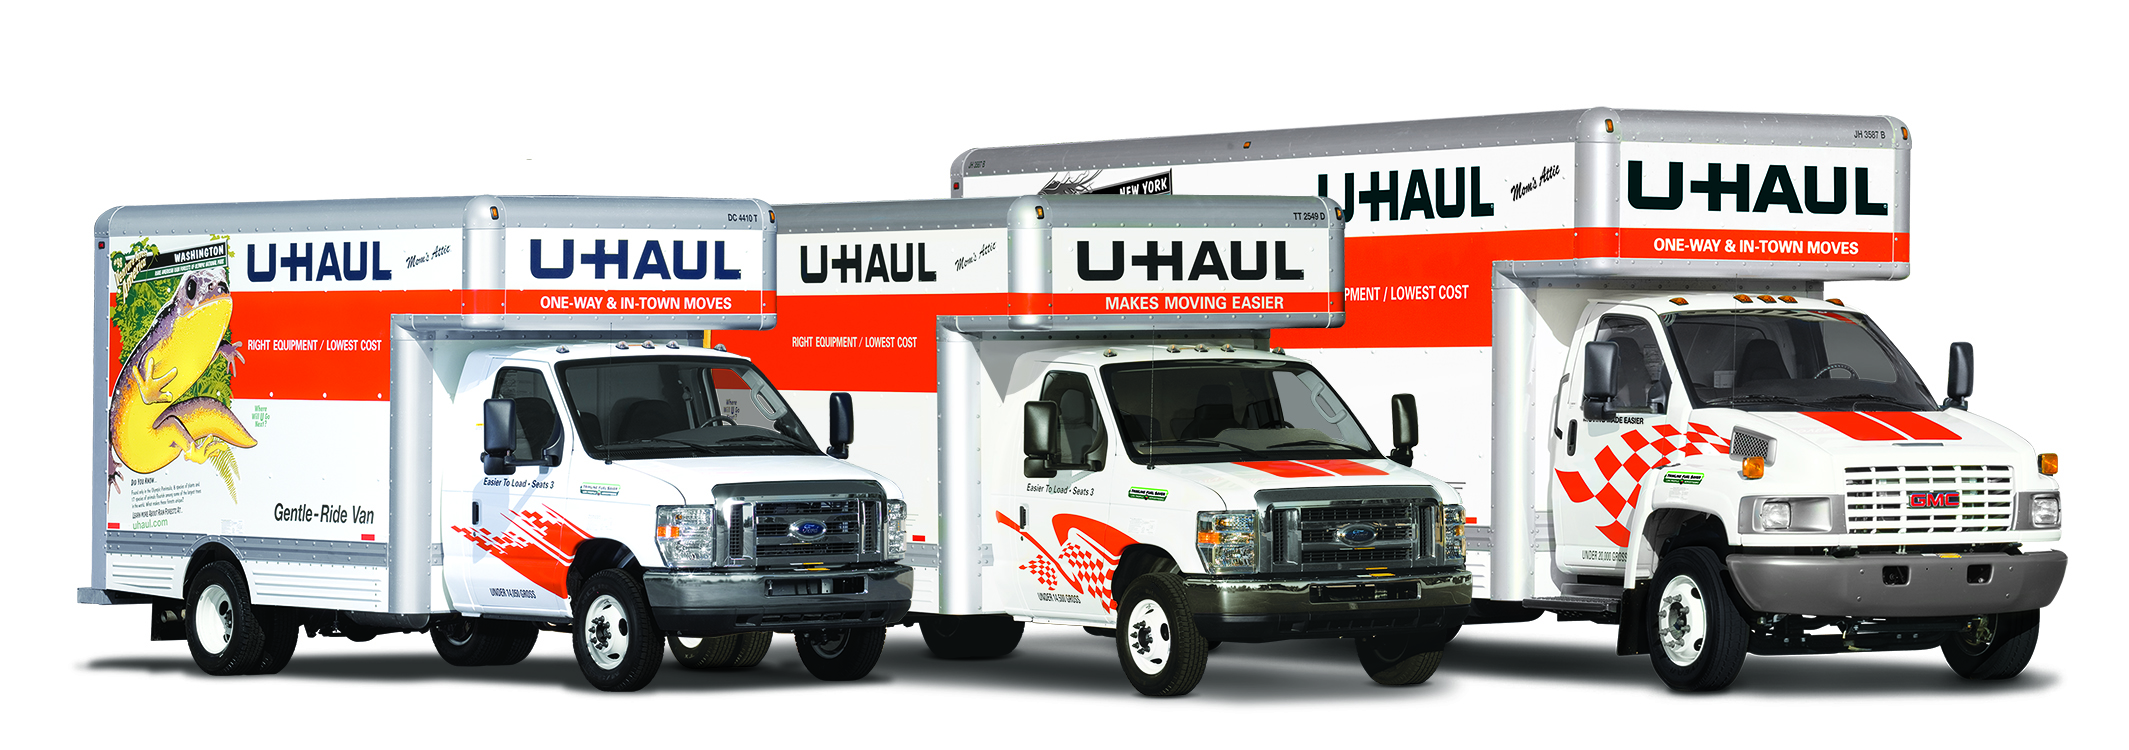 U-Haul Equipment Rentals